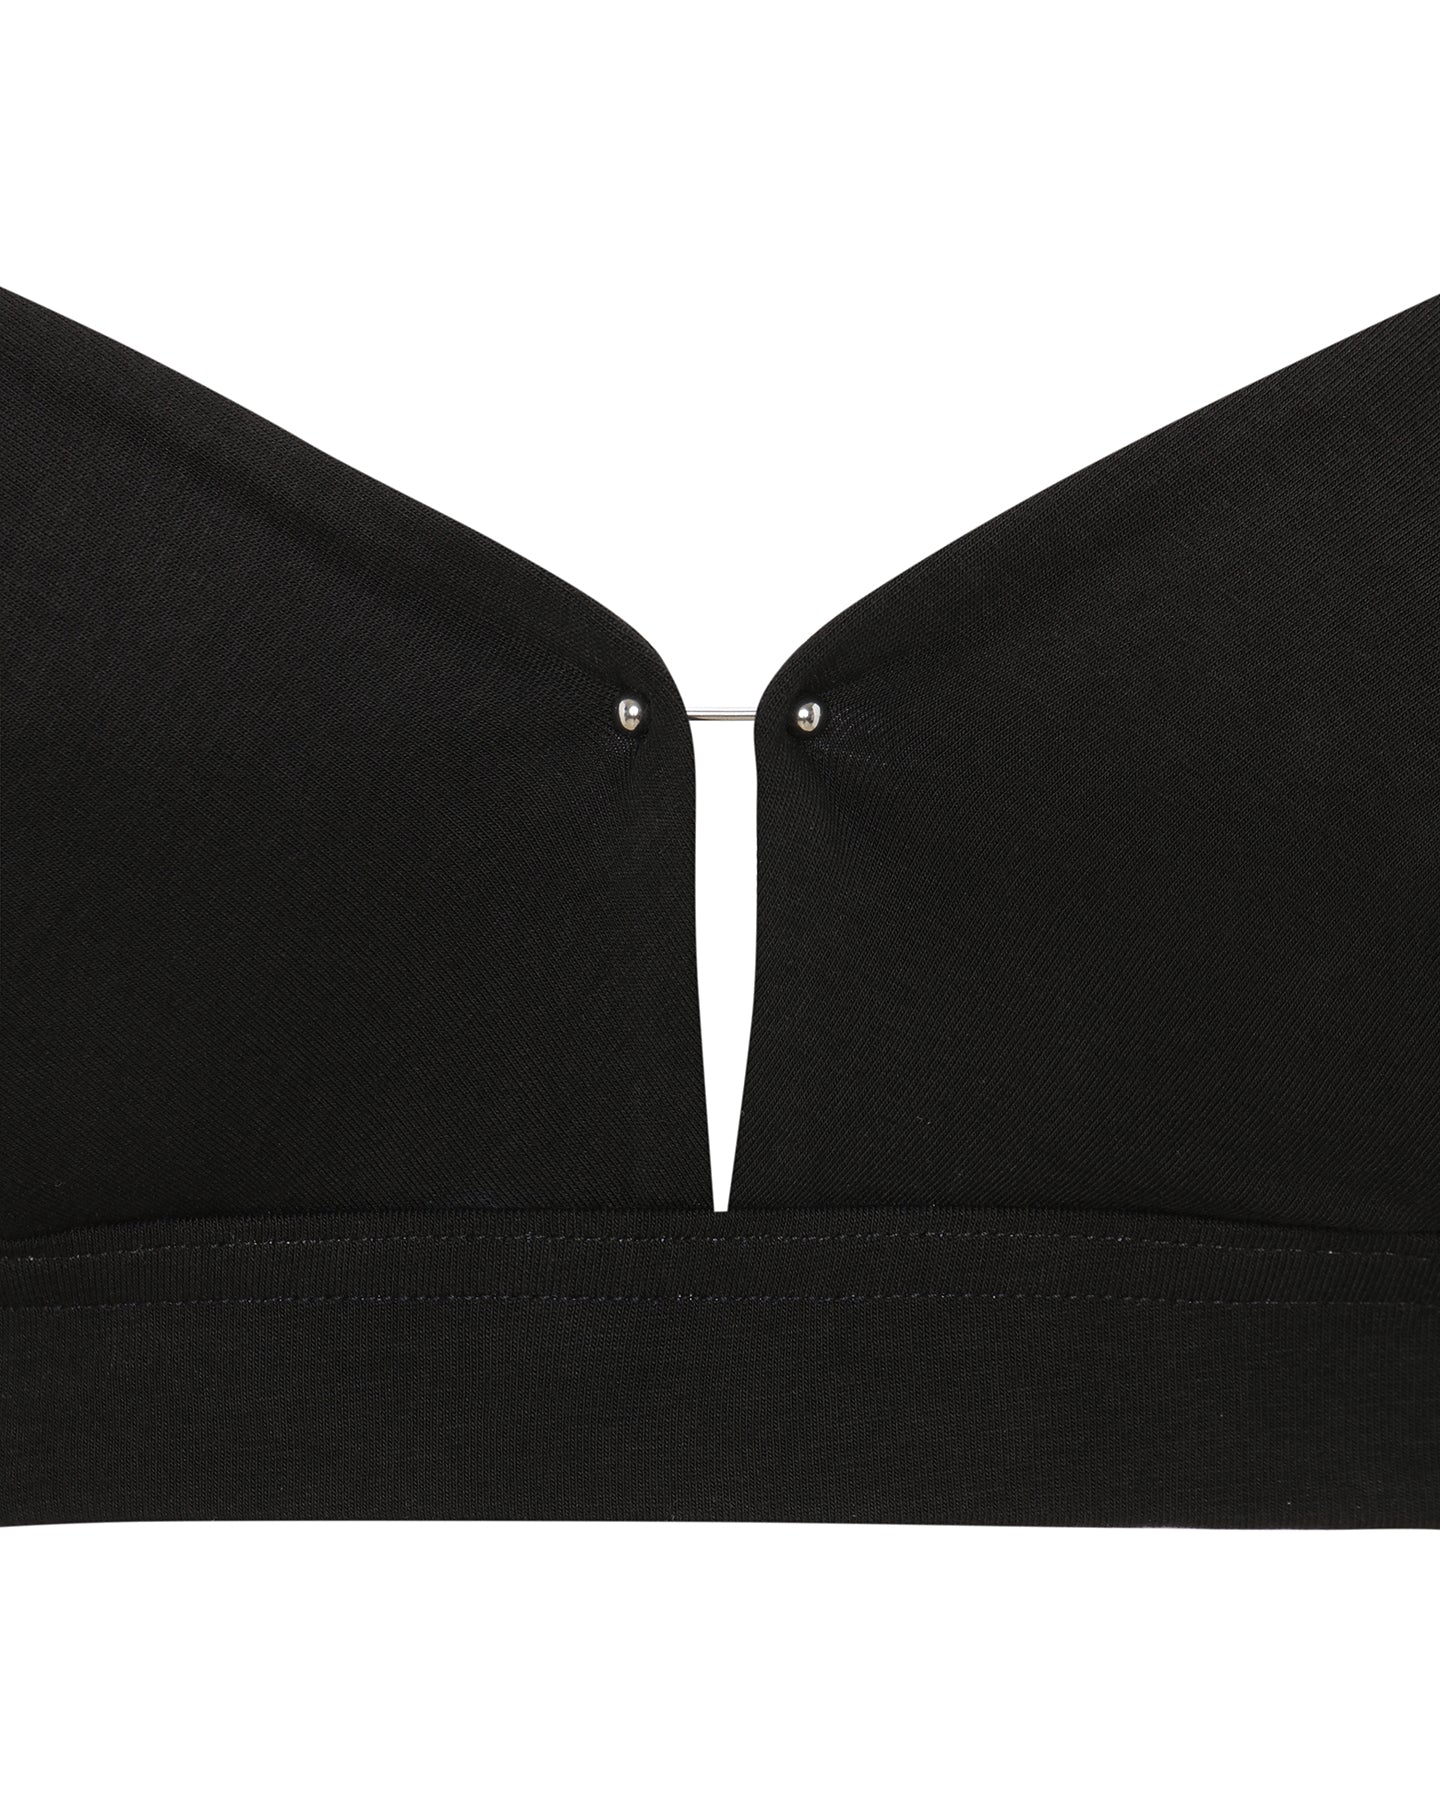 Black organic cotton bra | sexy lingerie | Black Bralette Bra | Lyzawear